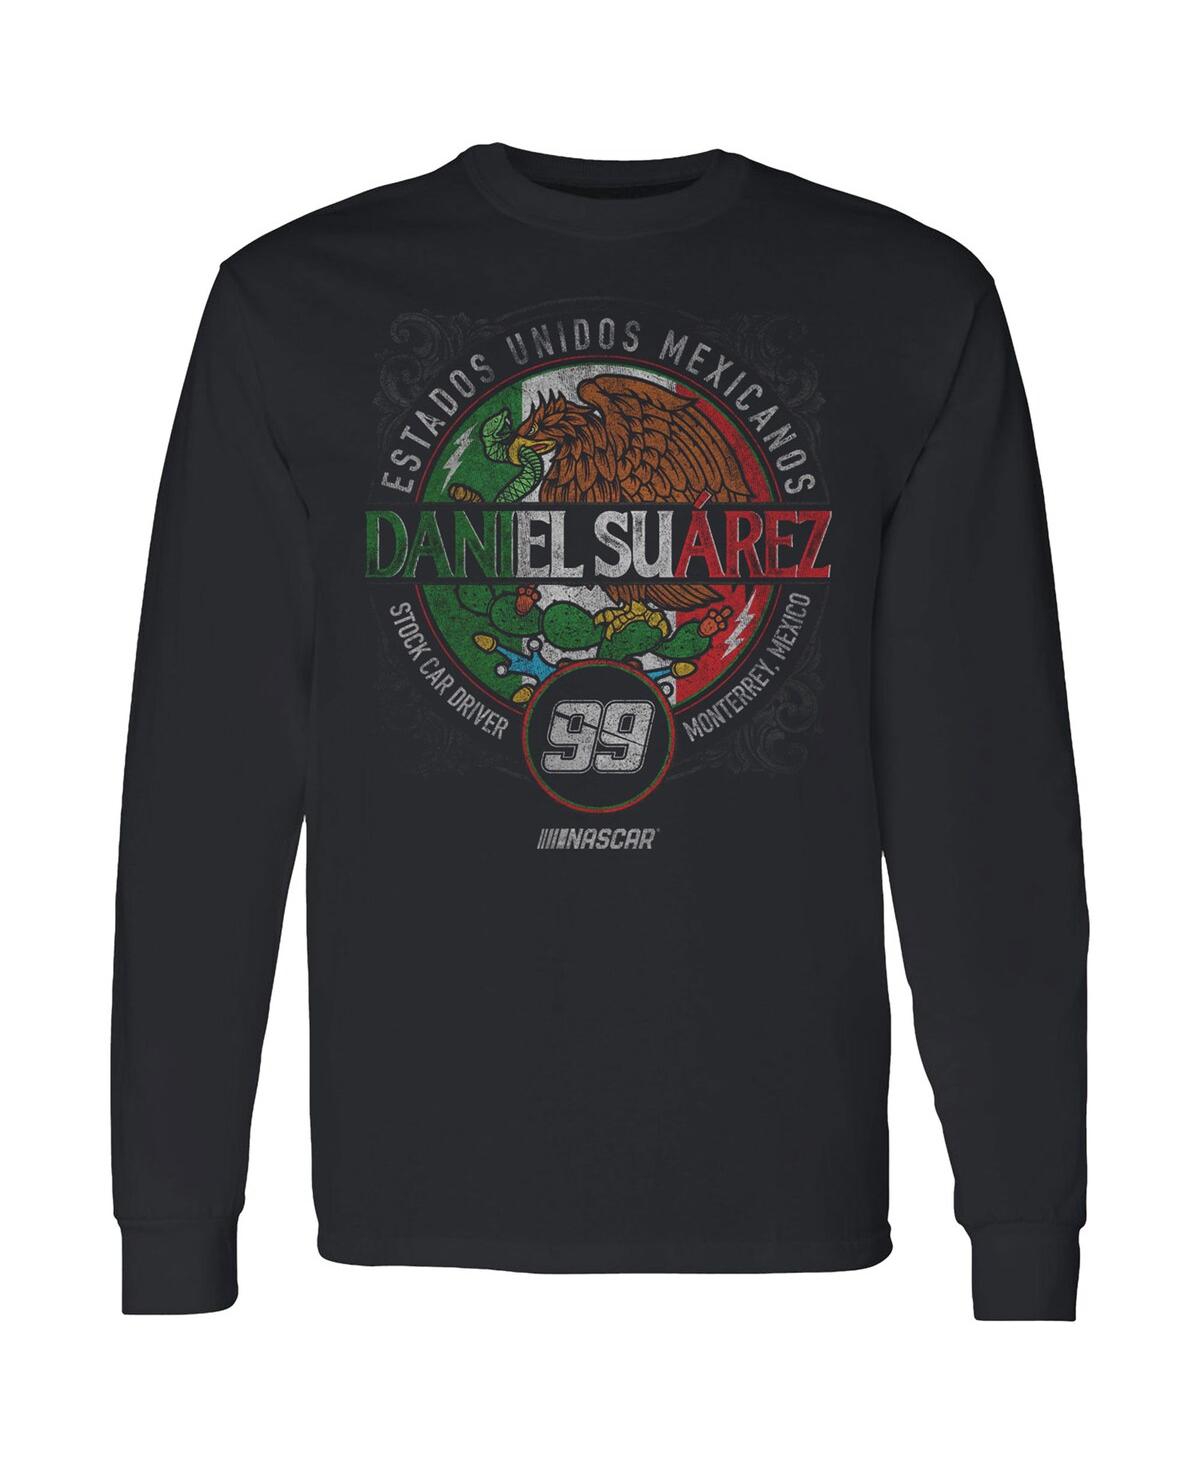 Shop Trackhouse Racing Team Collection Men's  Black Daniel Suarez Pancho Long Sleeve T-shirt